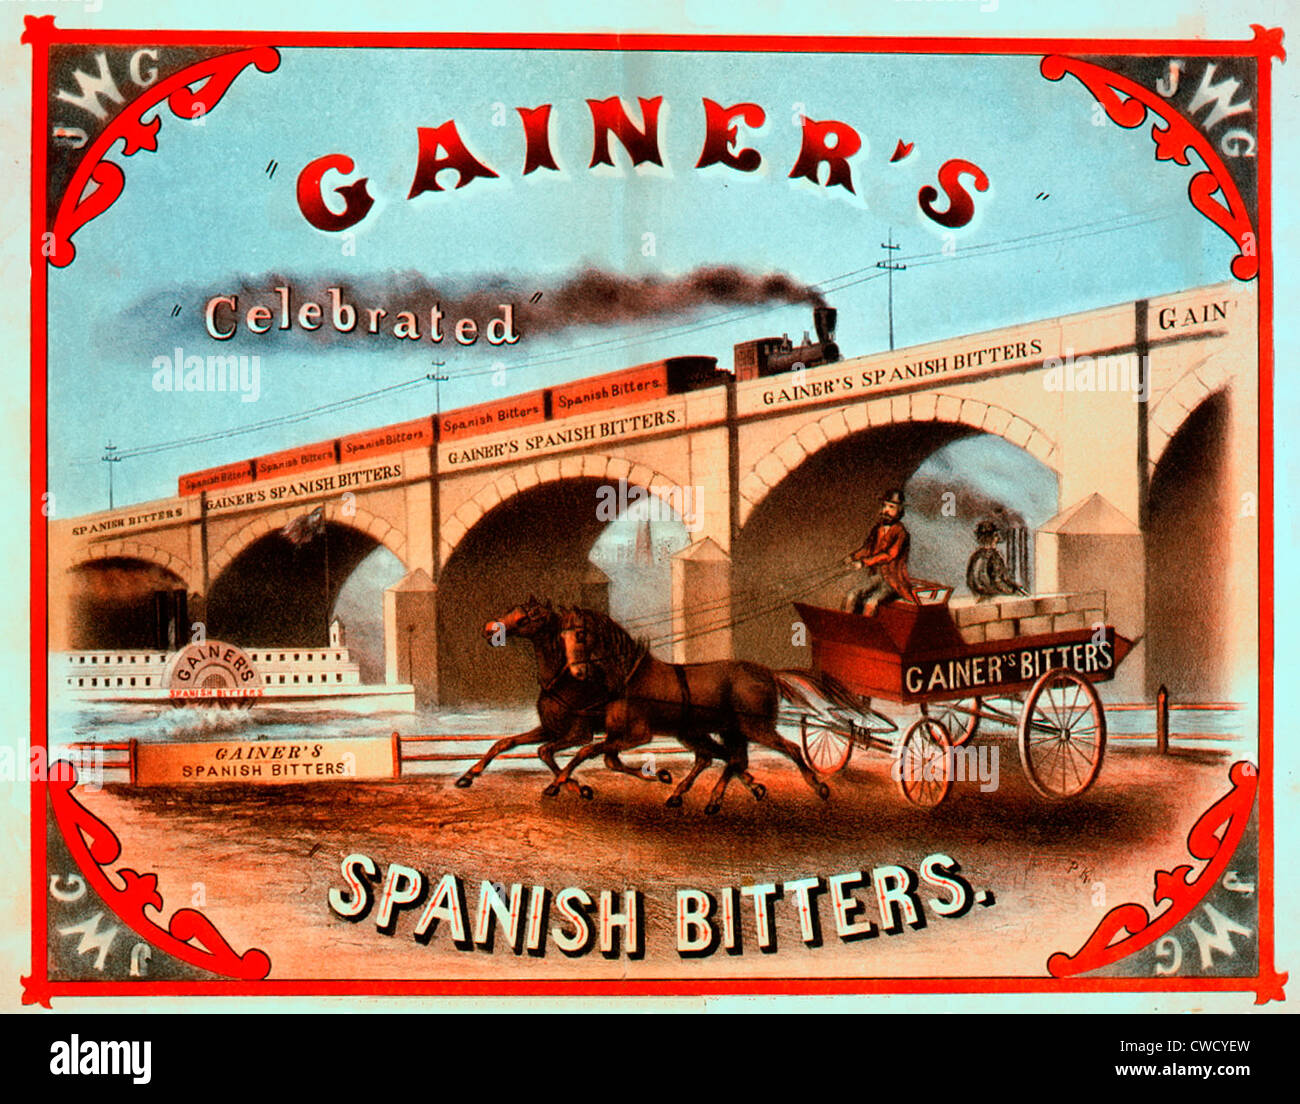 Gainer est célébré l'espagnol bitters - Brevet étiquette de médicaments, montrant le Gainer d'être transportés par chariot tiré par des chevaux, railroad, et bateau, vers 1868 Banque D'Images